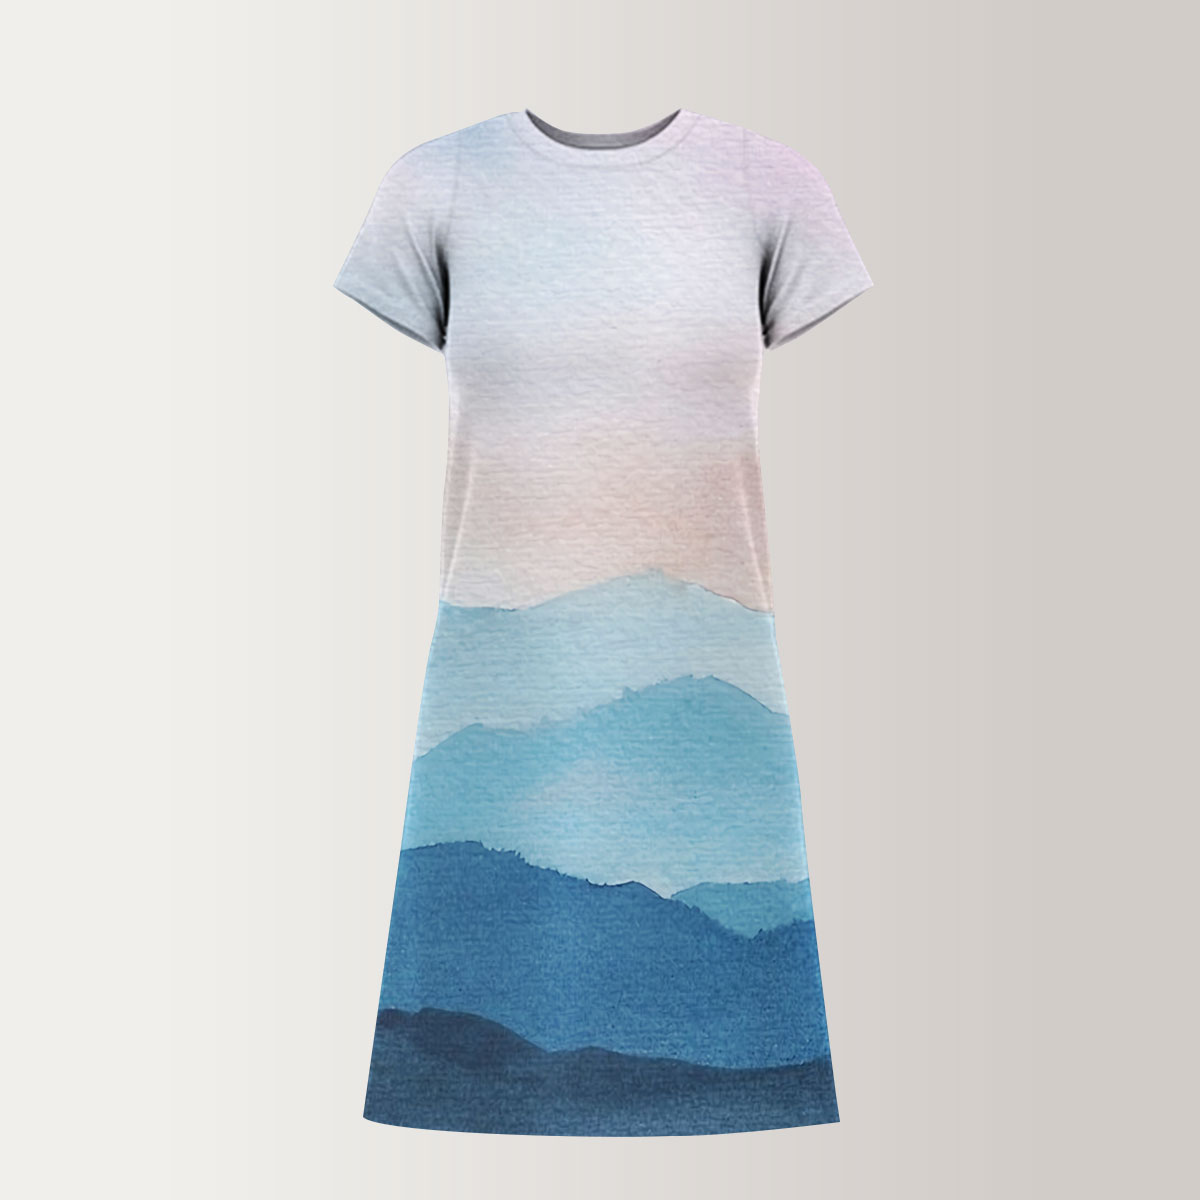 Abstract Mountain T-Shirt Dress